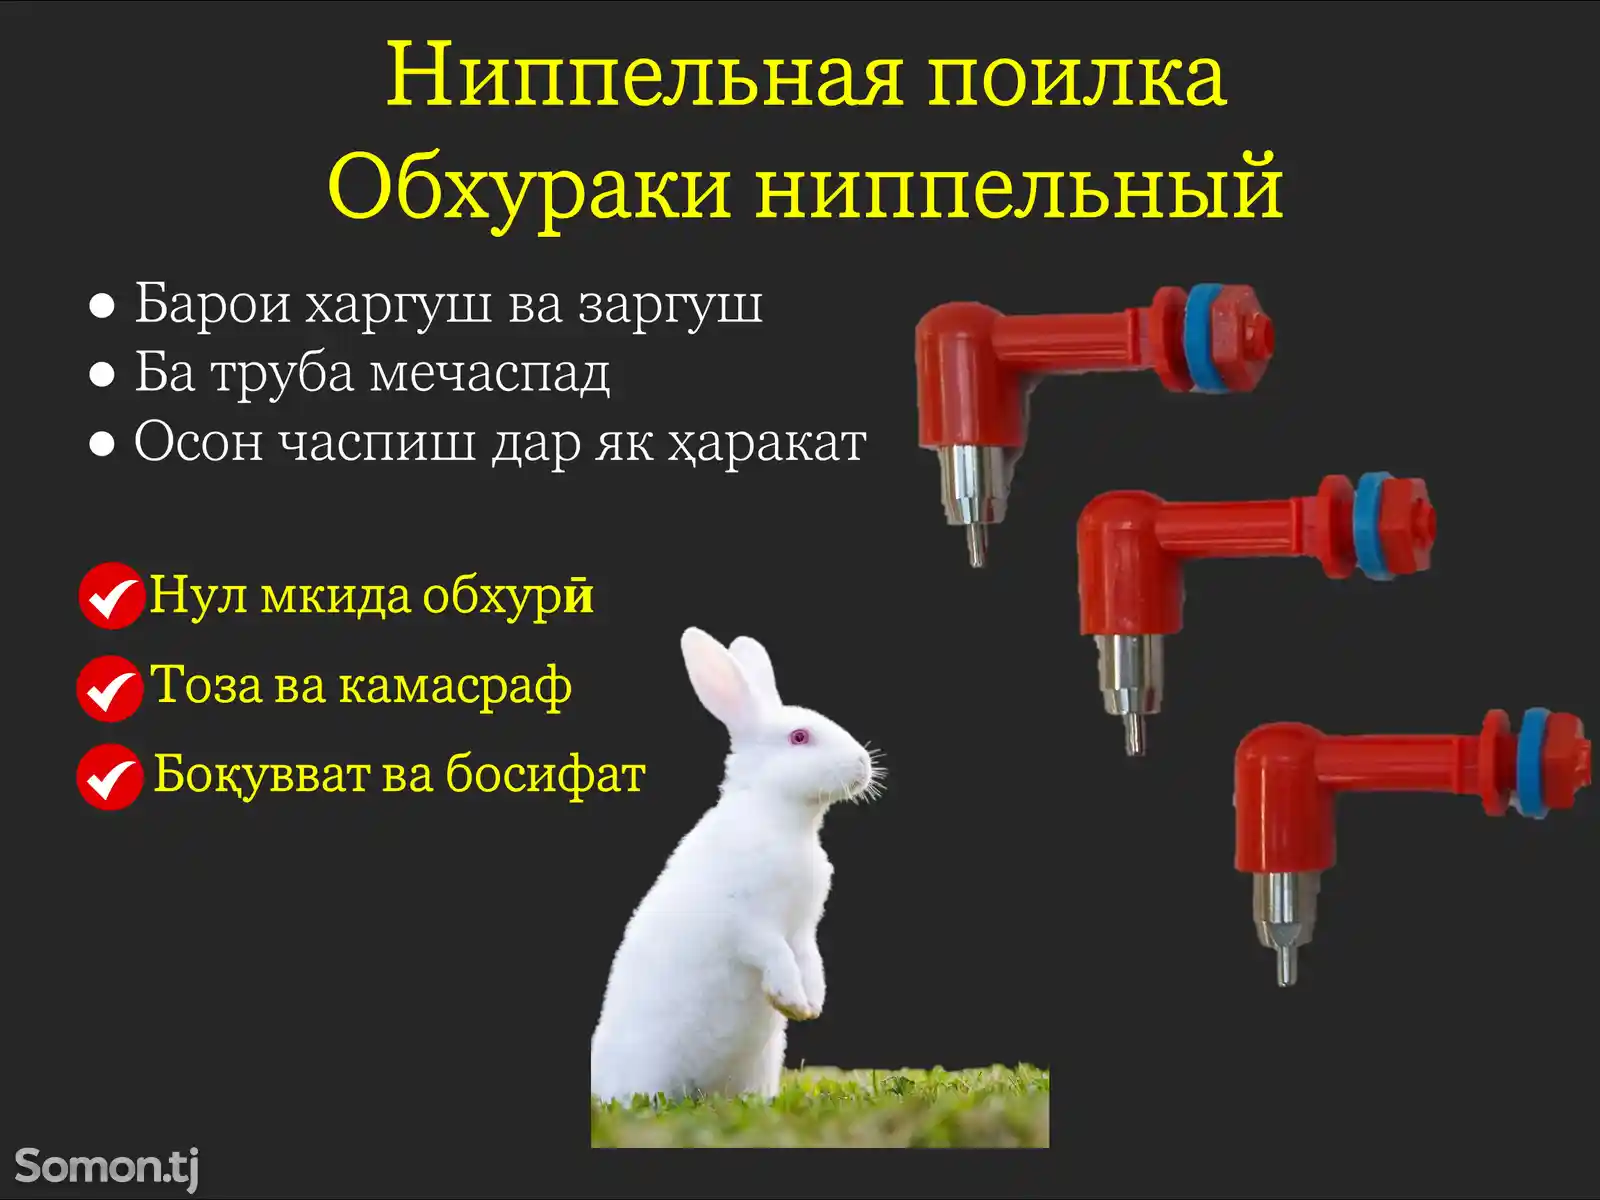 Обхурак барои харгуш/Ниппельная поилка для кролика-1